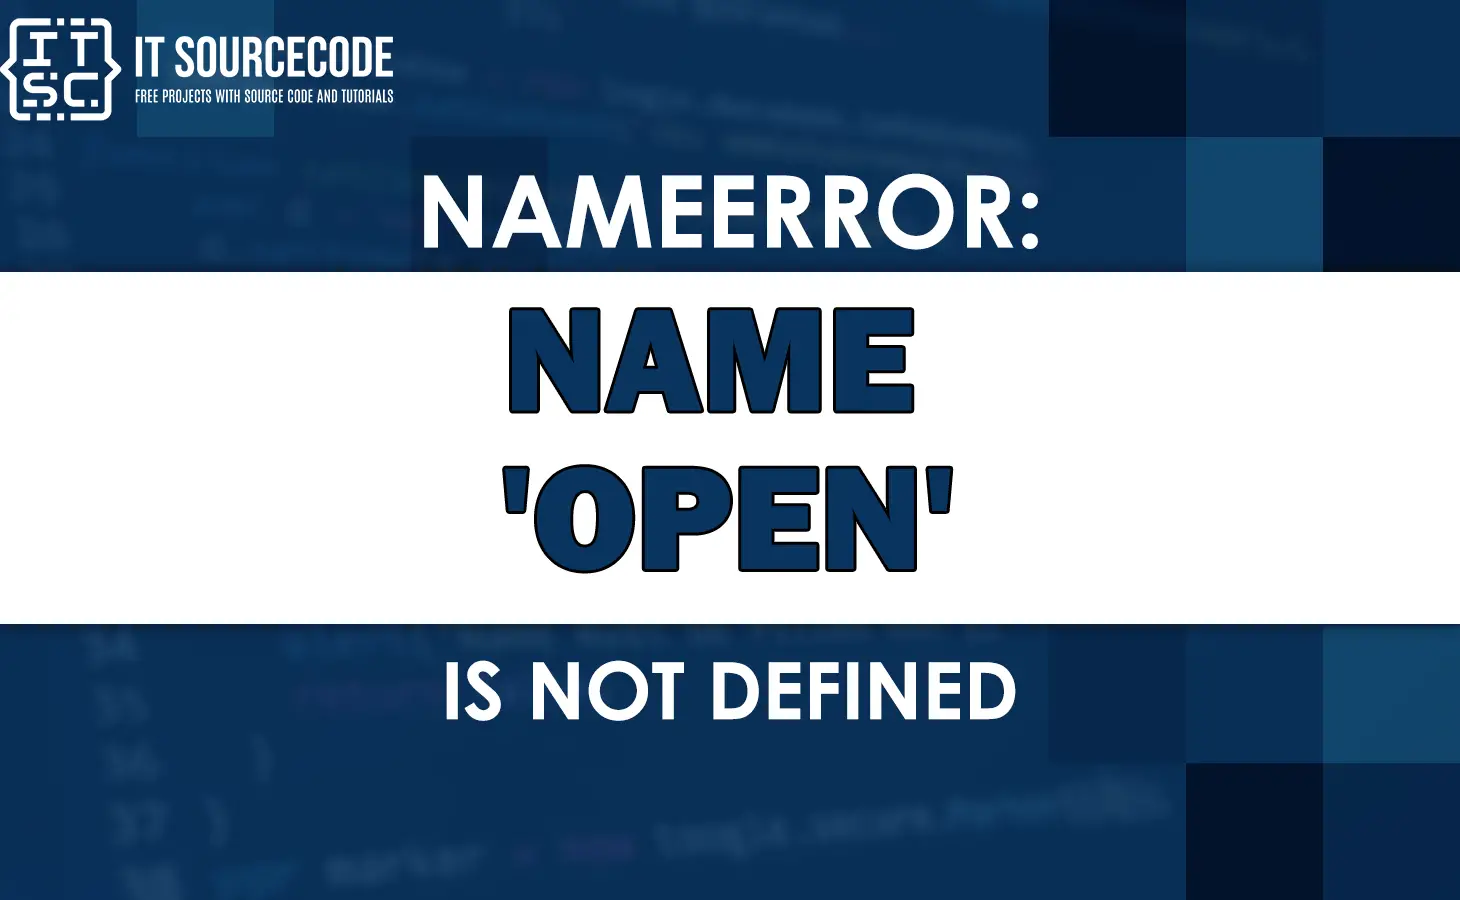 Nameerror: name 'open' is not defined